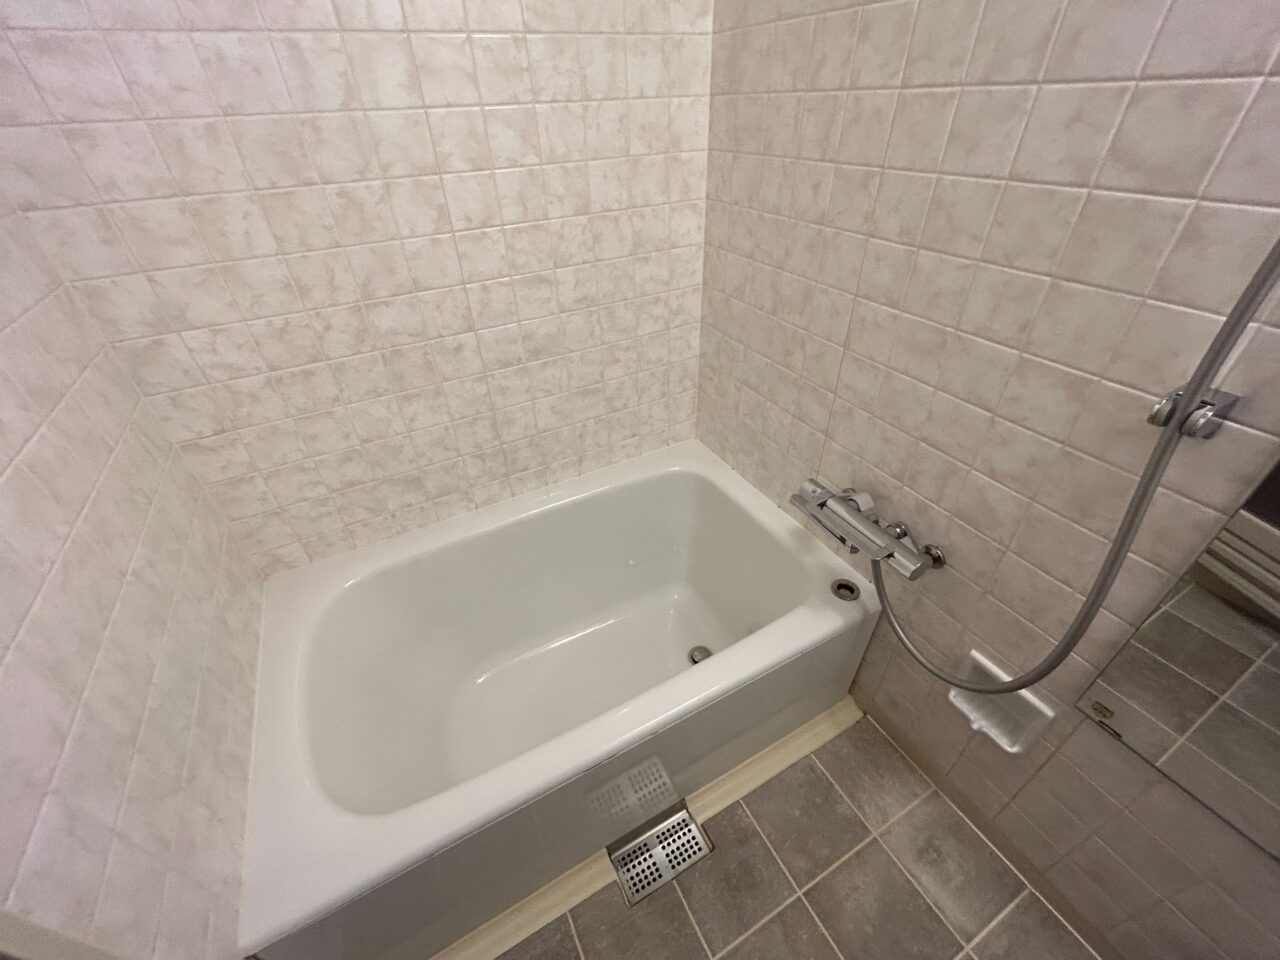 琵琶湖マリオットホテルの客室(和室)のお風呂